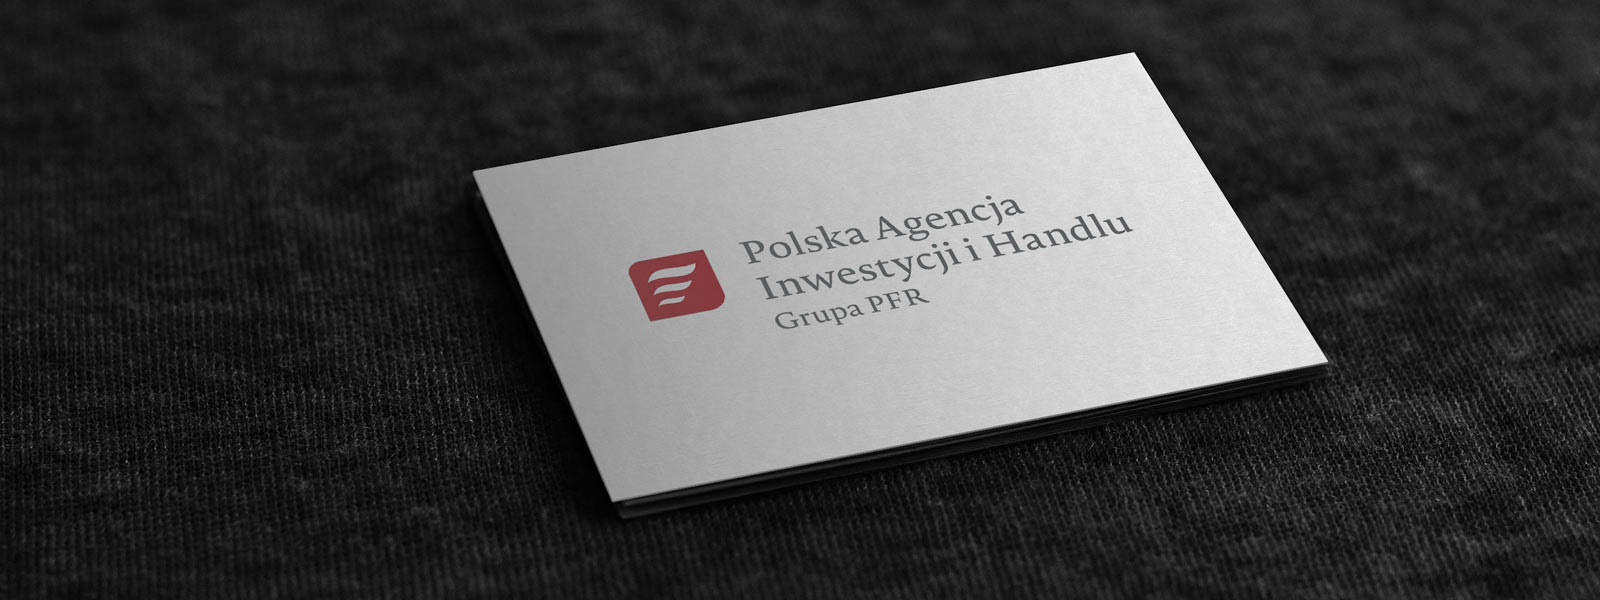 Przełomowa inwestycja na Lubelszczyźnie - TNGS Tomasz Karman - Biuro Obsługi Inwestora - Lublin